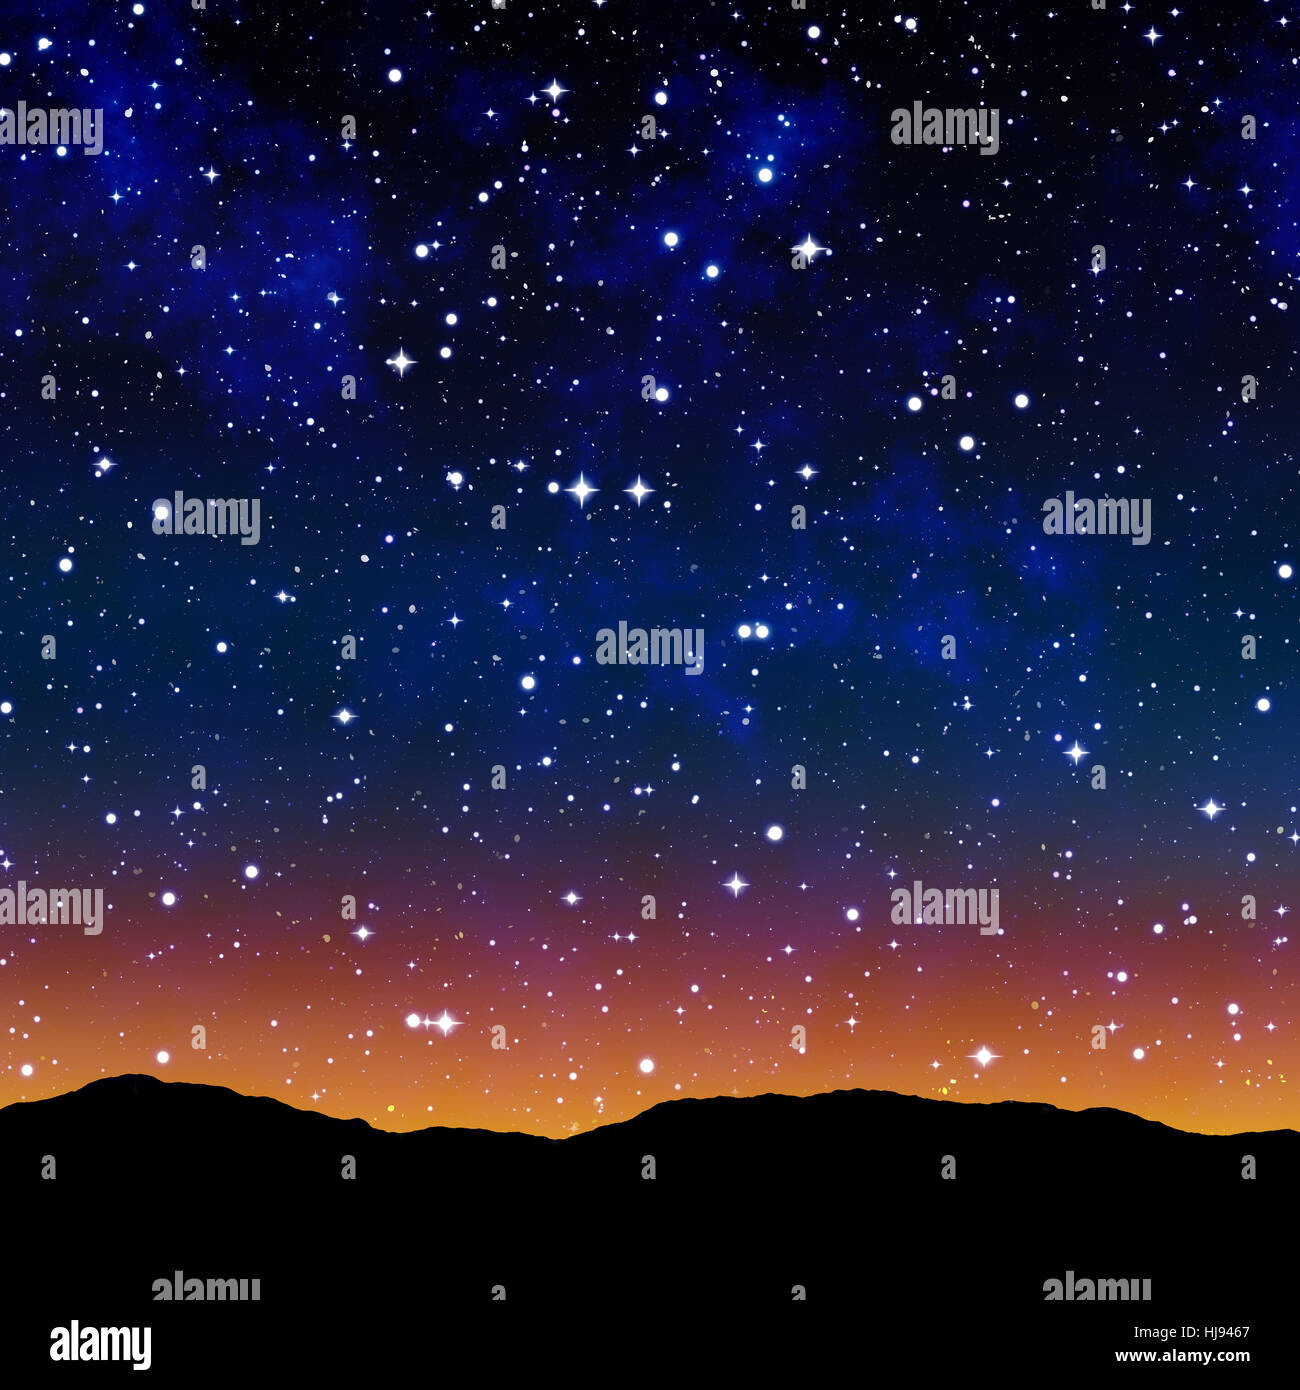 L'espace, nuit, nuit, illustration, des étoiles, des astérisques, extérieur, ciel, ciel, Banque D'Images